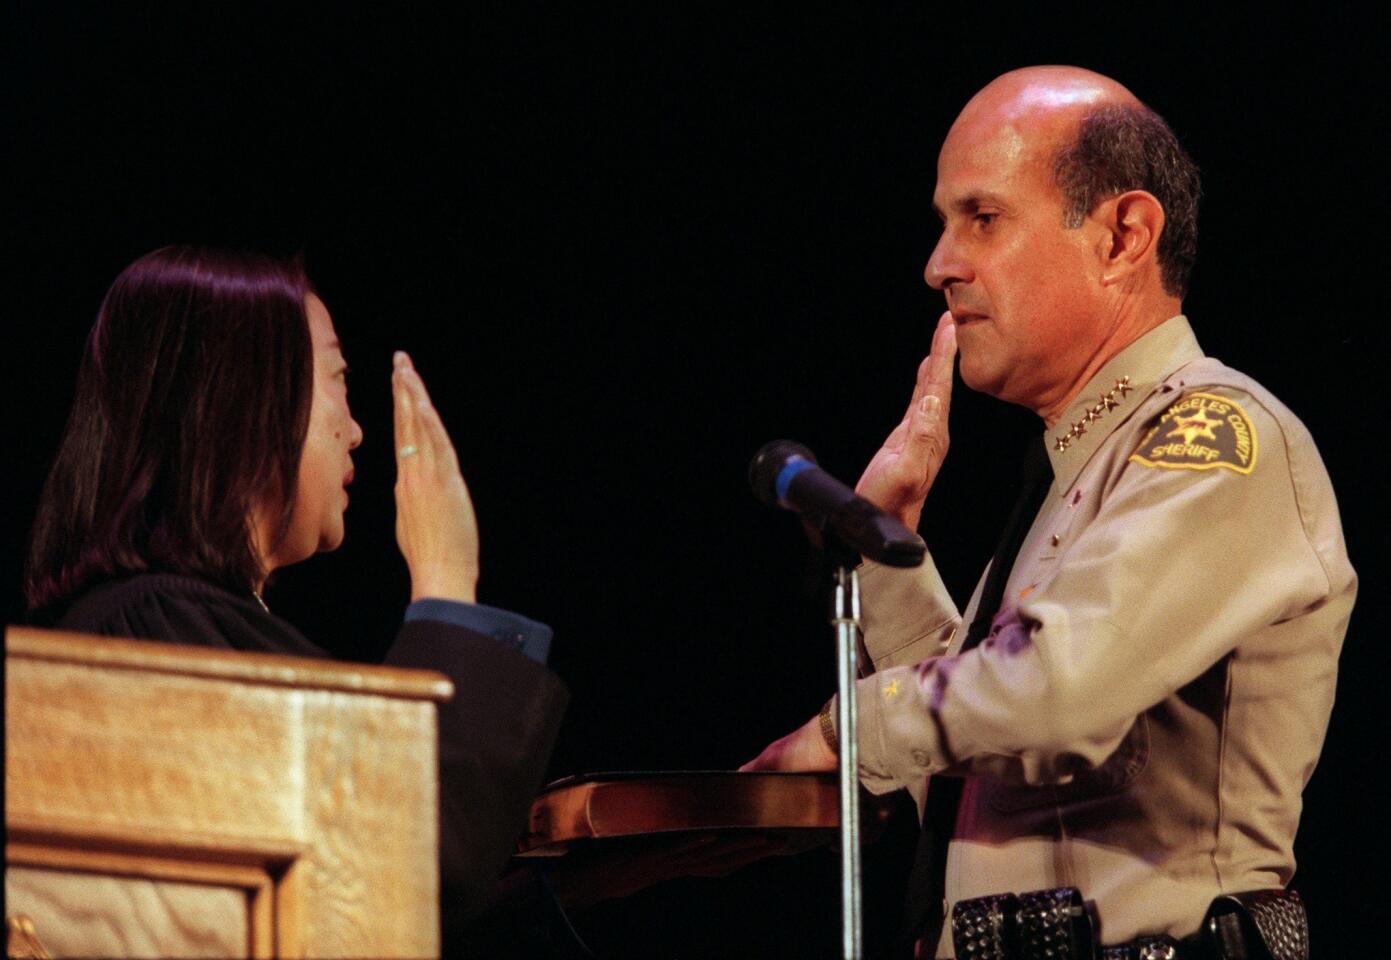 Lee Baca is sworn in as sheriff